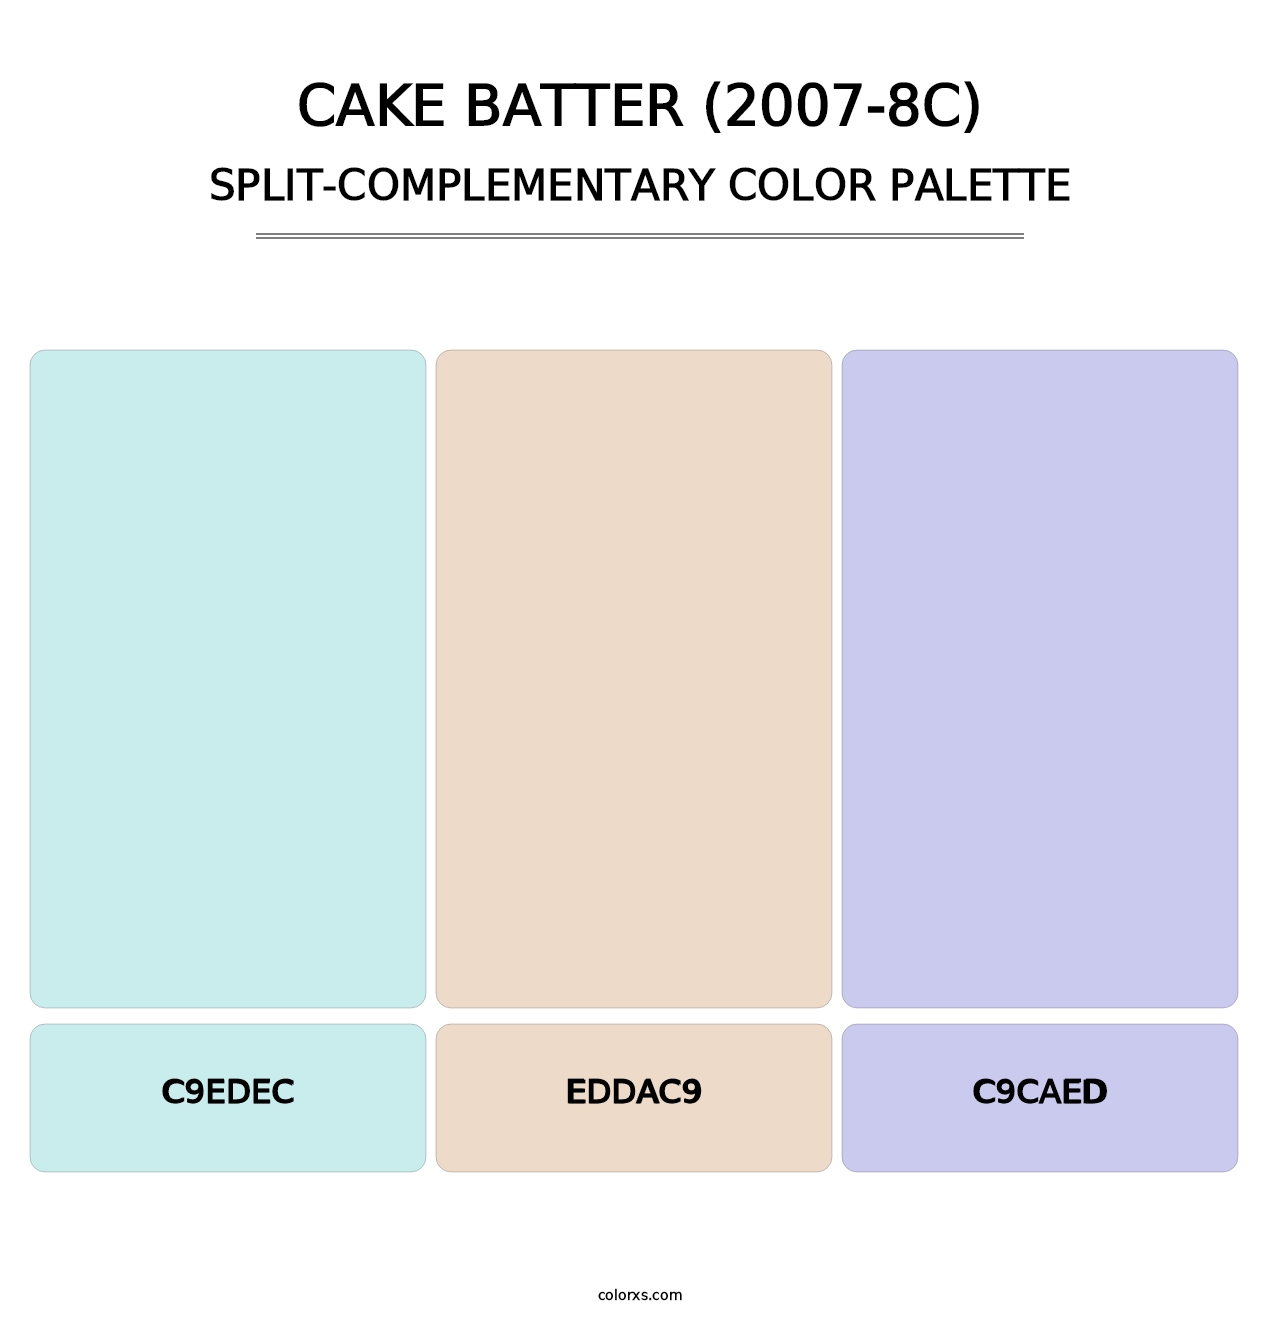 Cake Batter (2007-8C) - Split-Complementary Color Palette